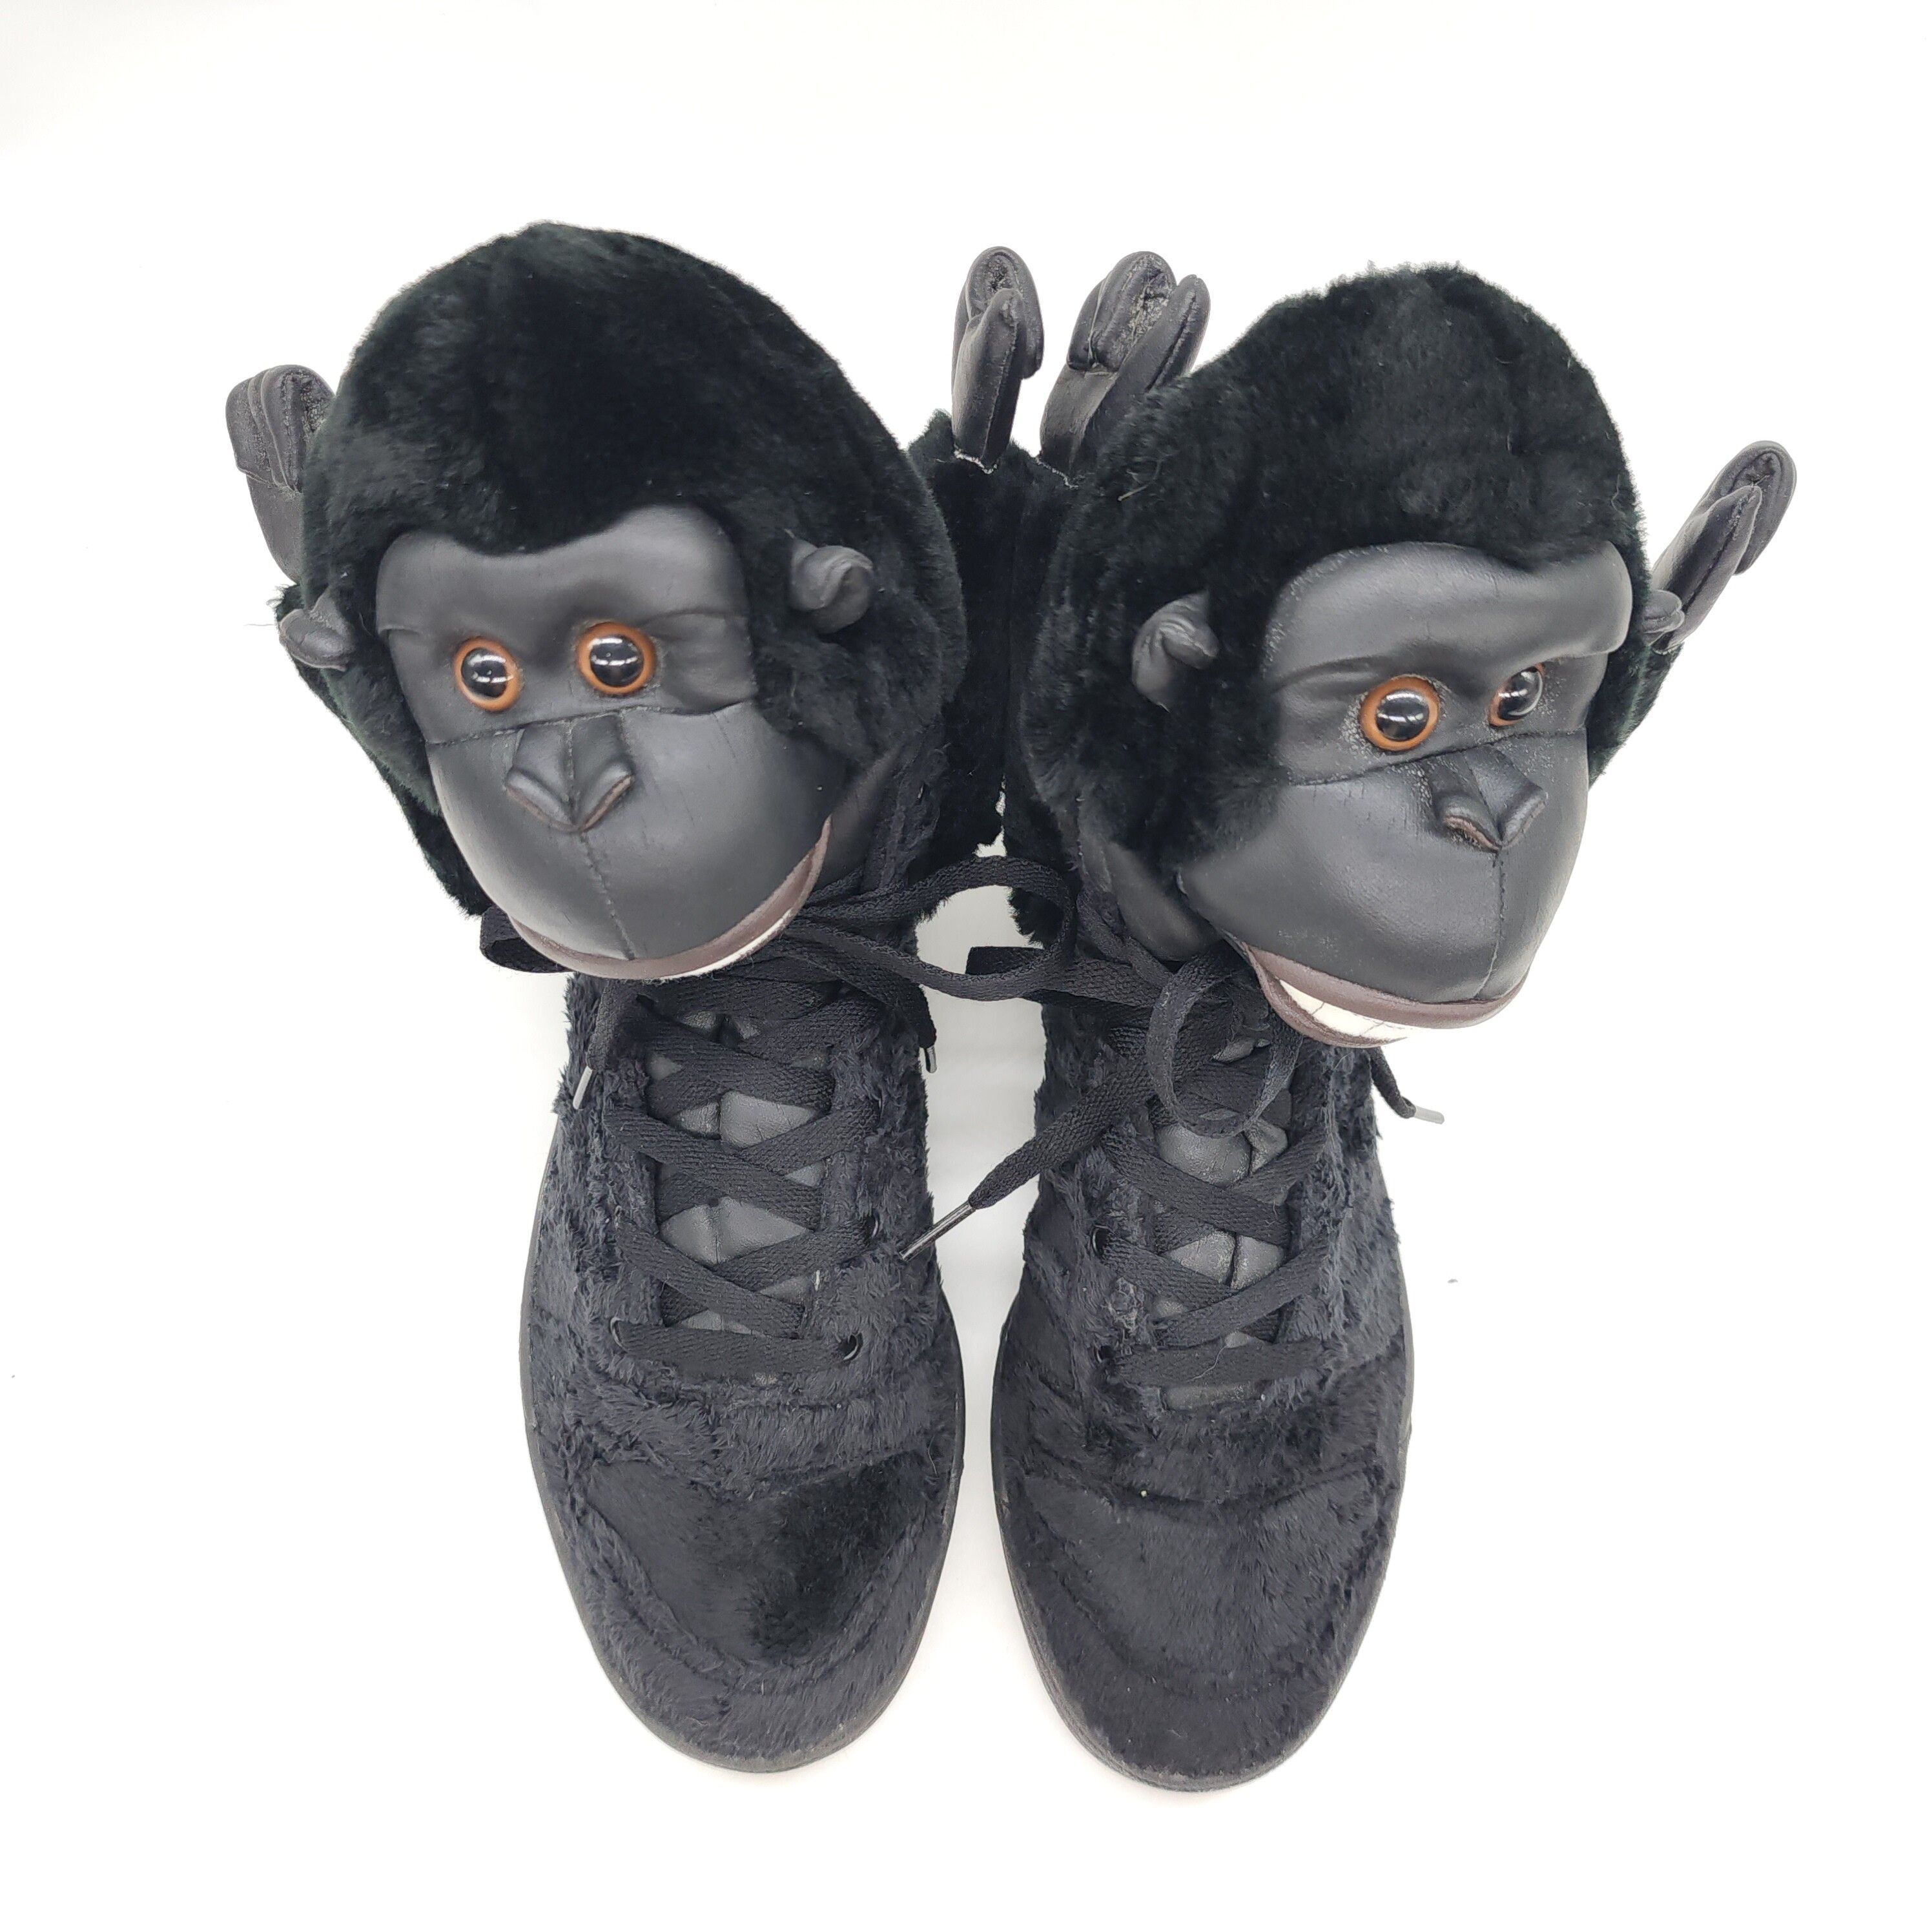 Adidas x Jeremy Scott - Gorilla Sneakers "2 Chainz" - 4